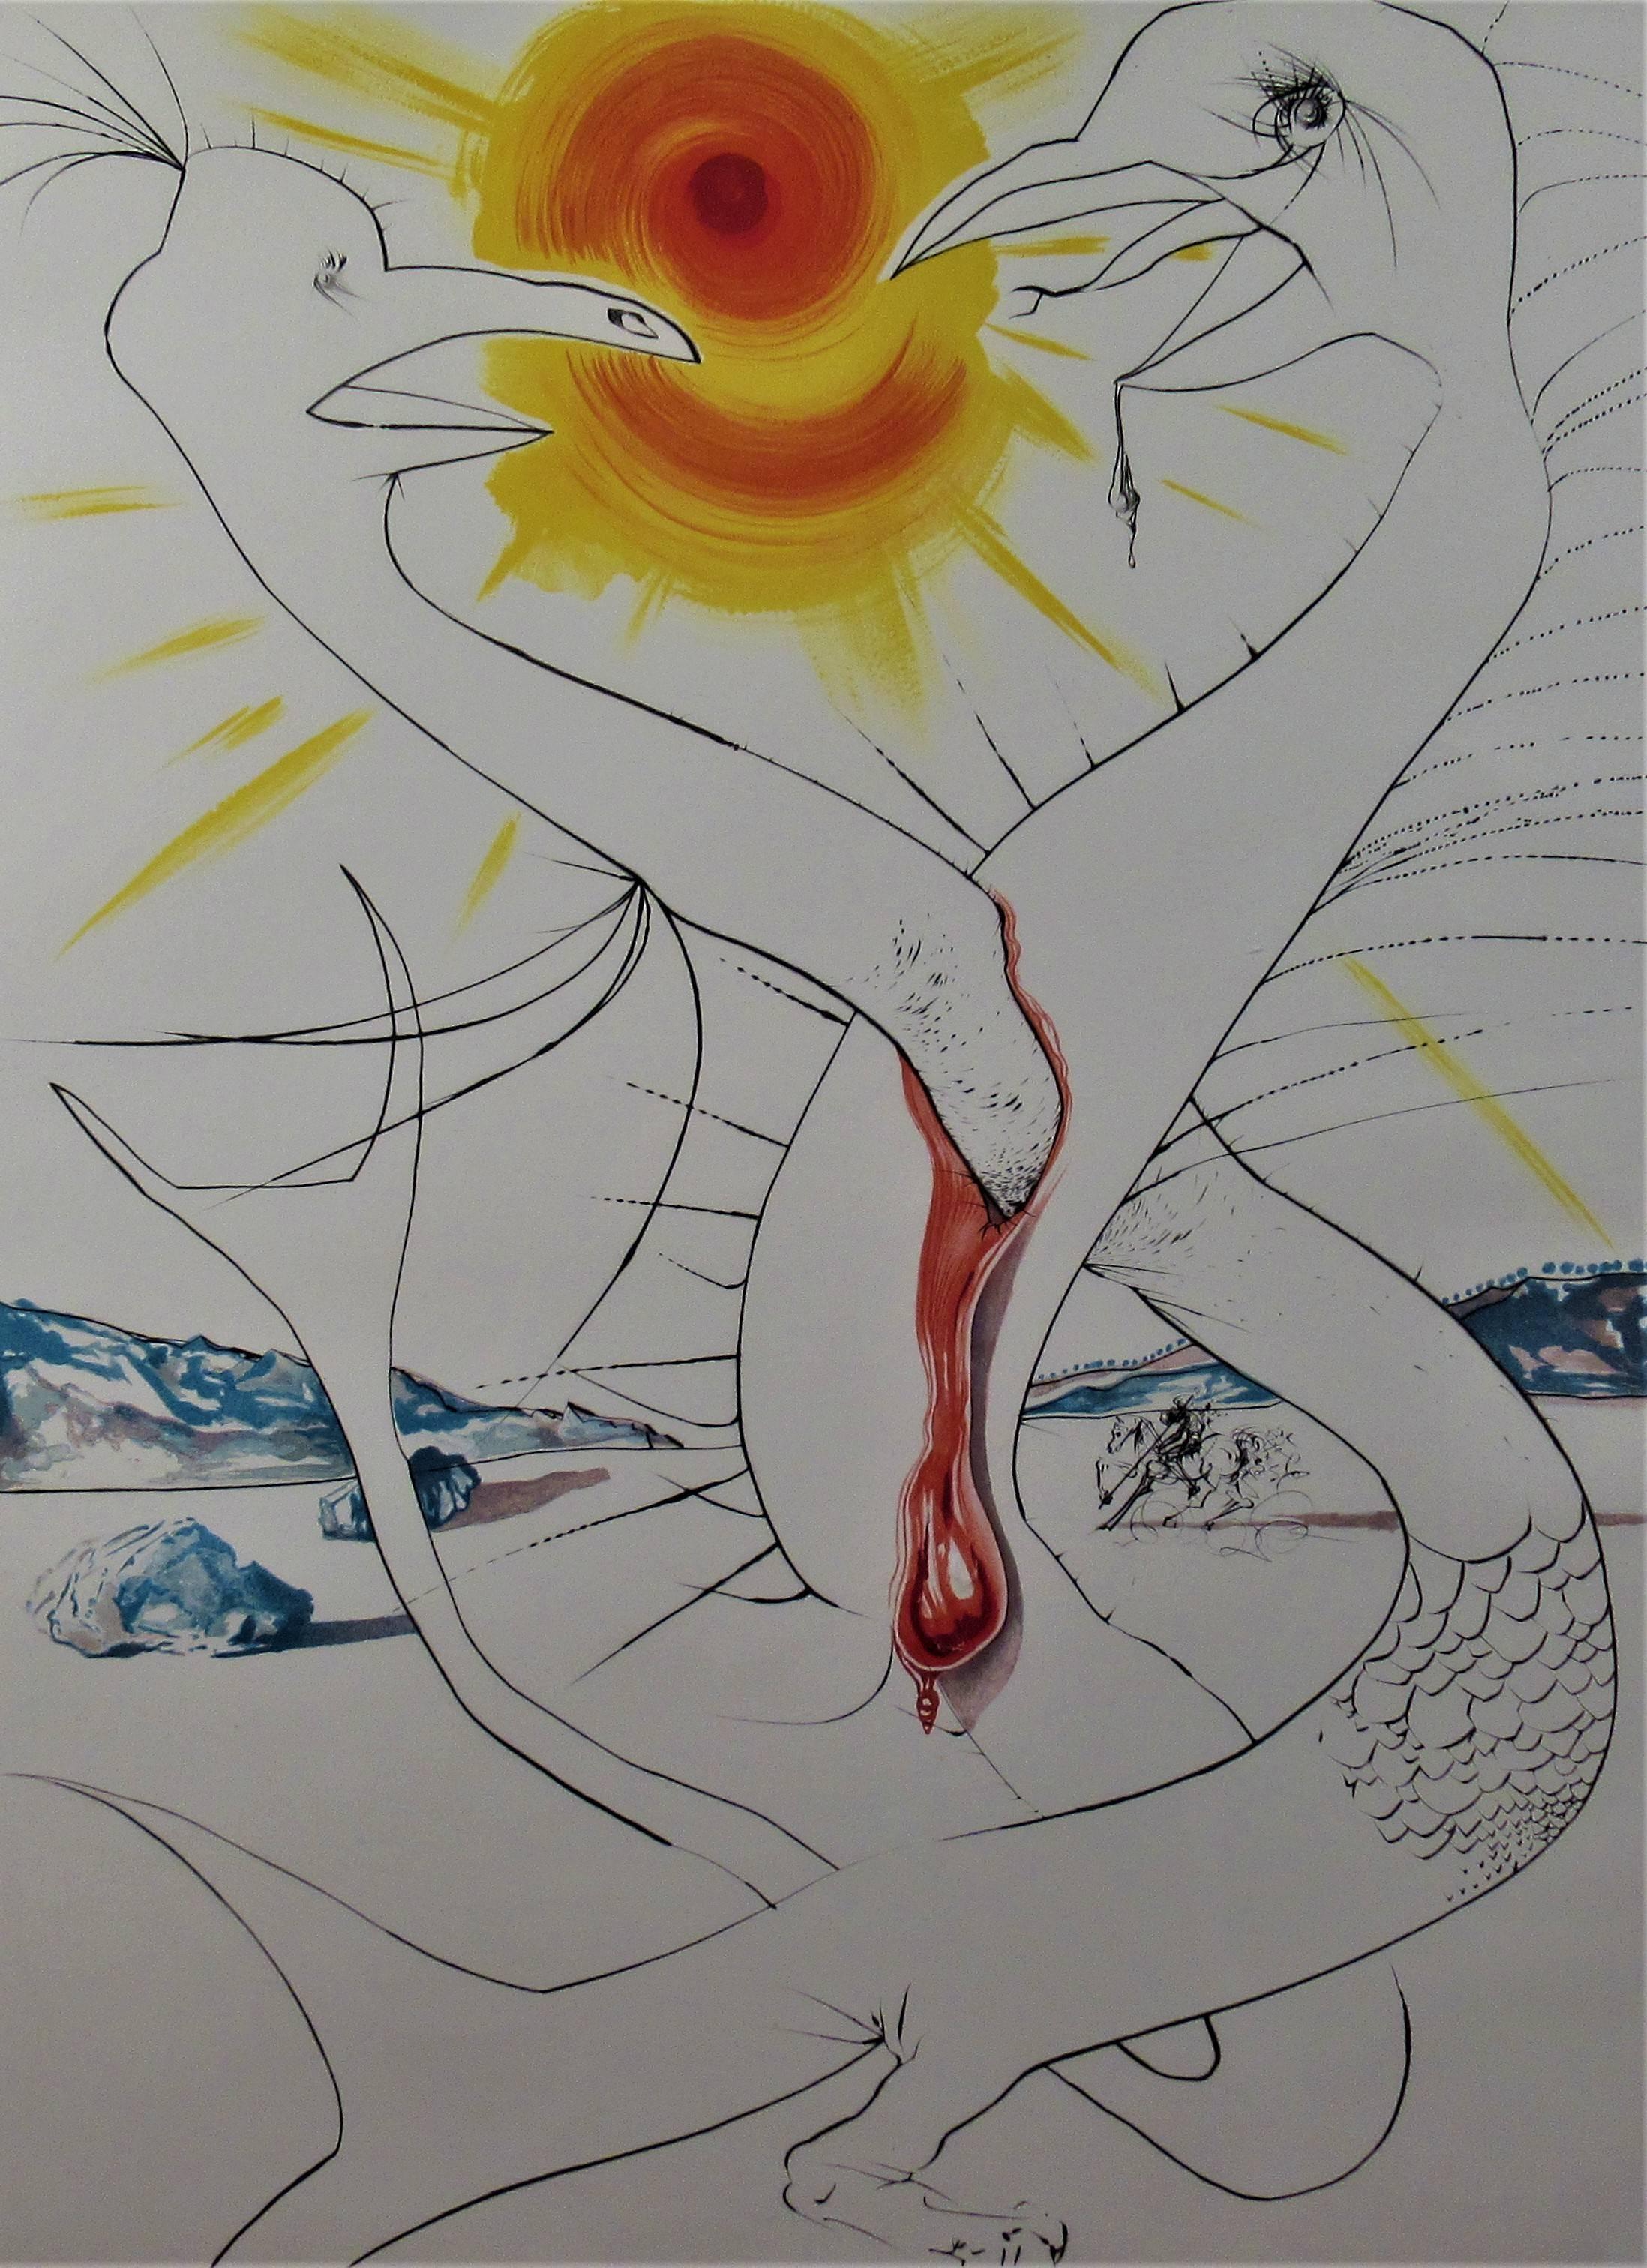 Le Caducee de Mars Alimente par la Boule de feu de Jupiter - Print by Salvador Dalí